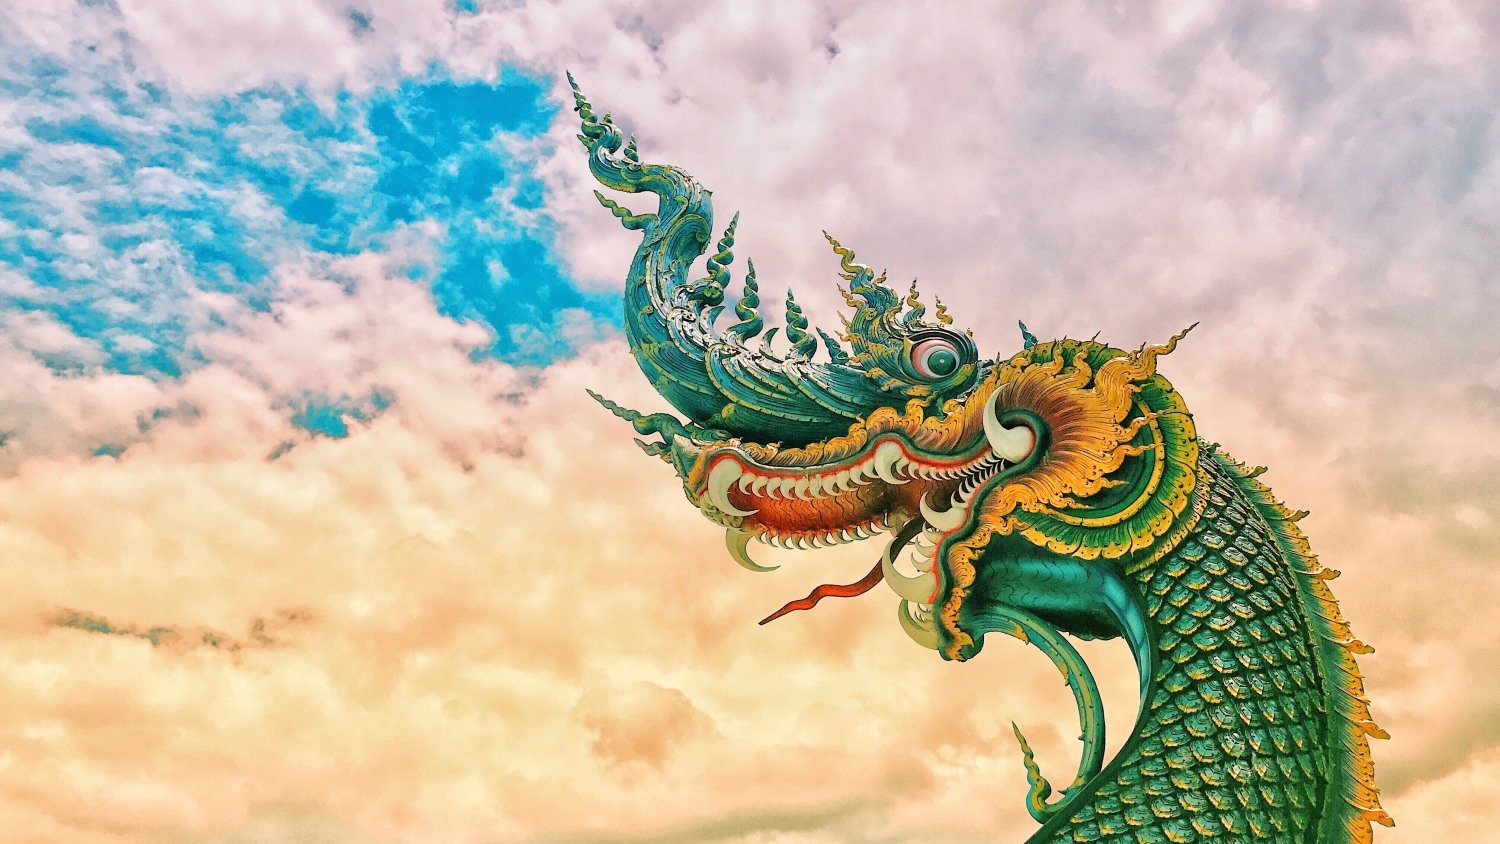 Loài thủy quái Naga trong văn hóa Ấn Độ cũng có chung nhiều đặc điểm với loài rồng. (Ảnh minh họa: Art photography 9, Shutterstock)